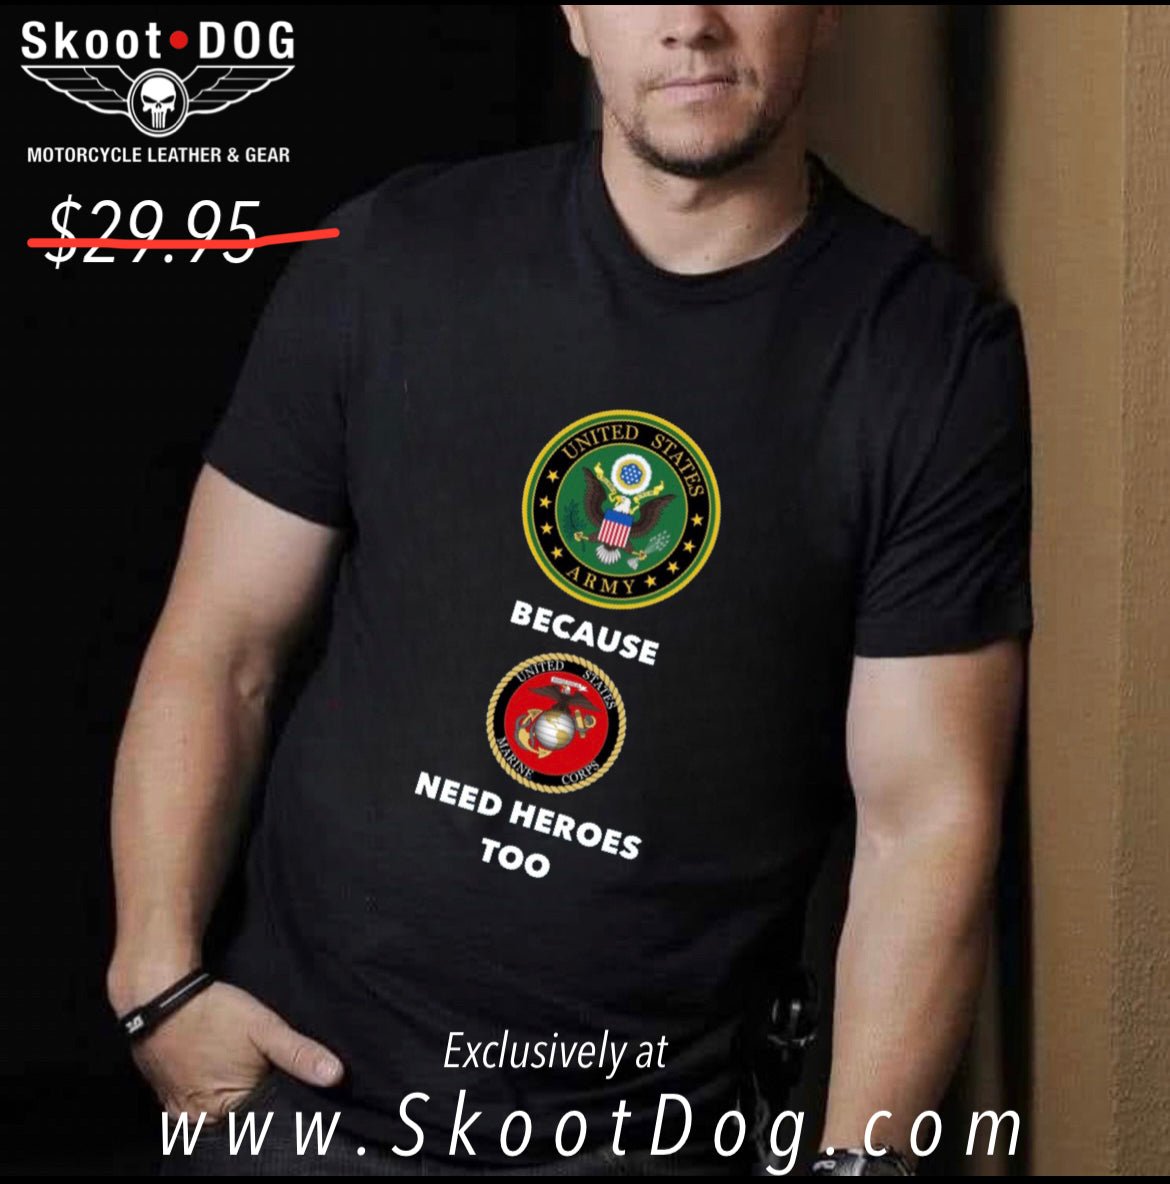 A Marine’s Hero - Skootdog.com